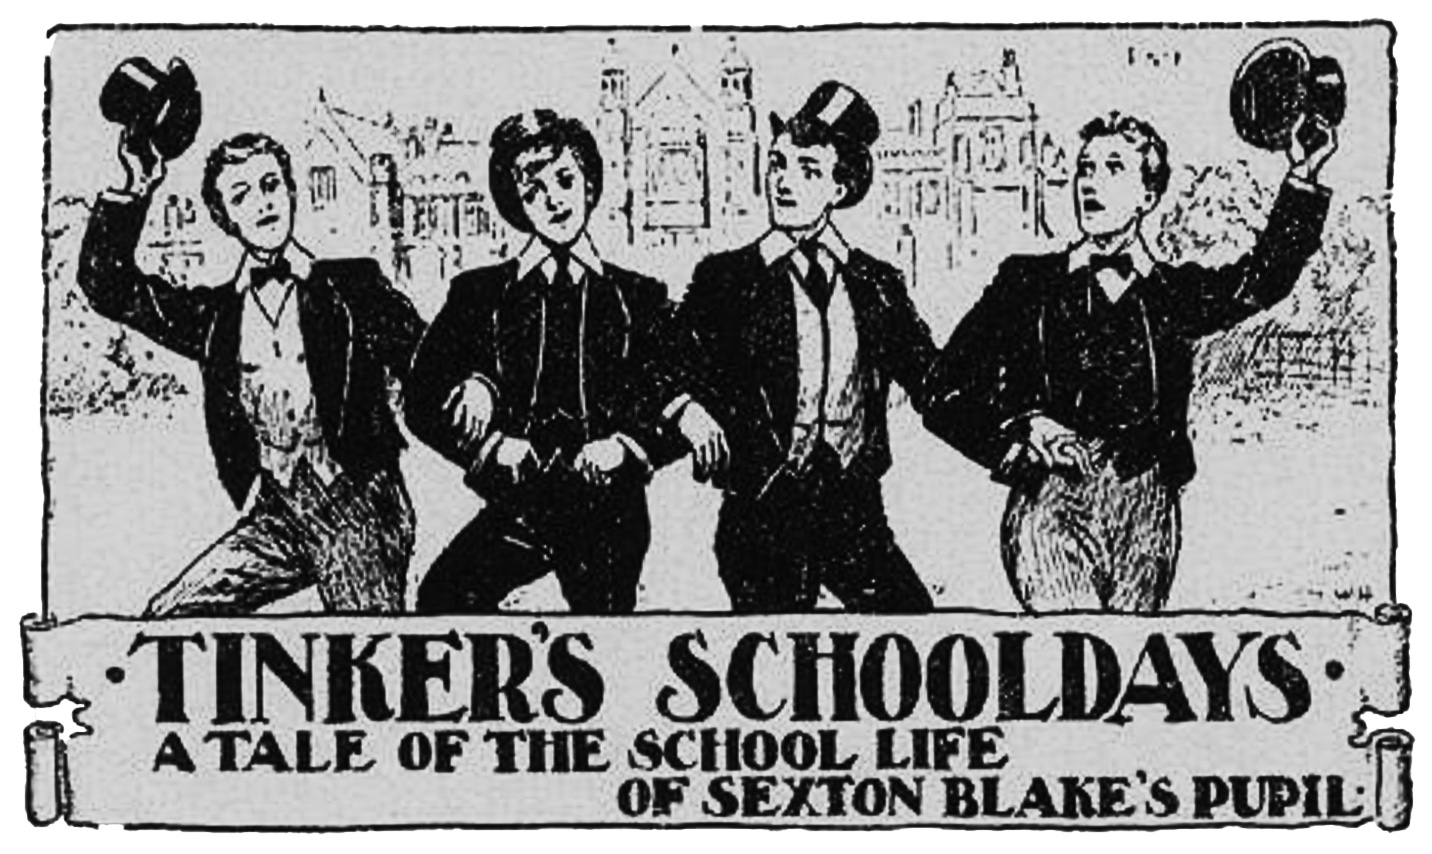 Tinker's Schooldays